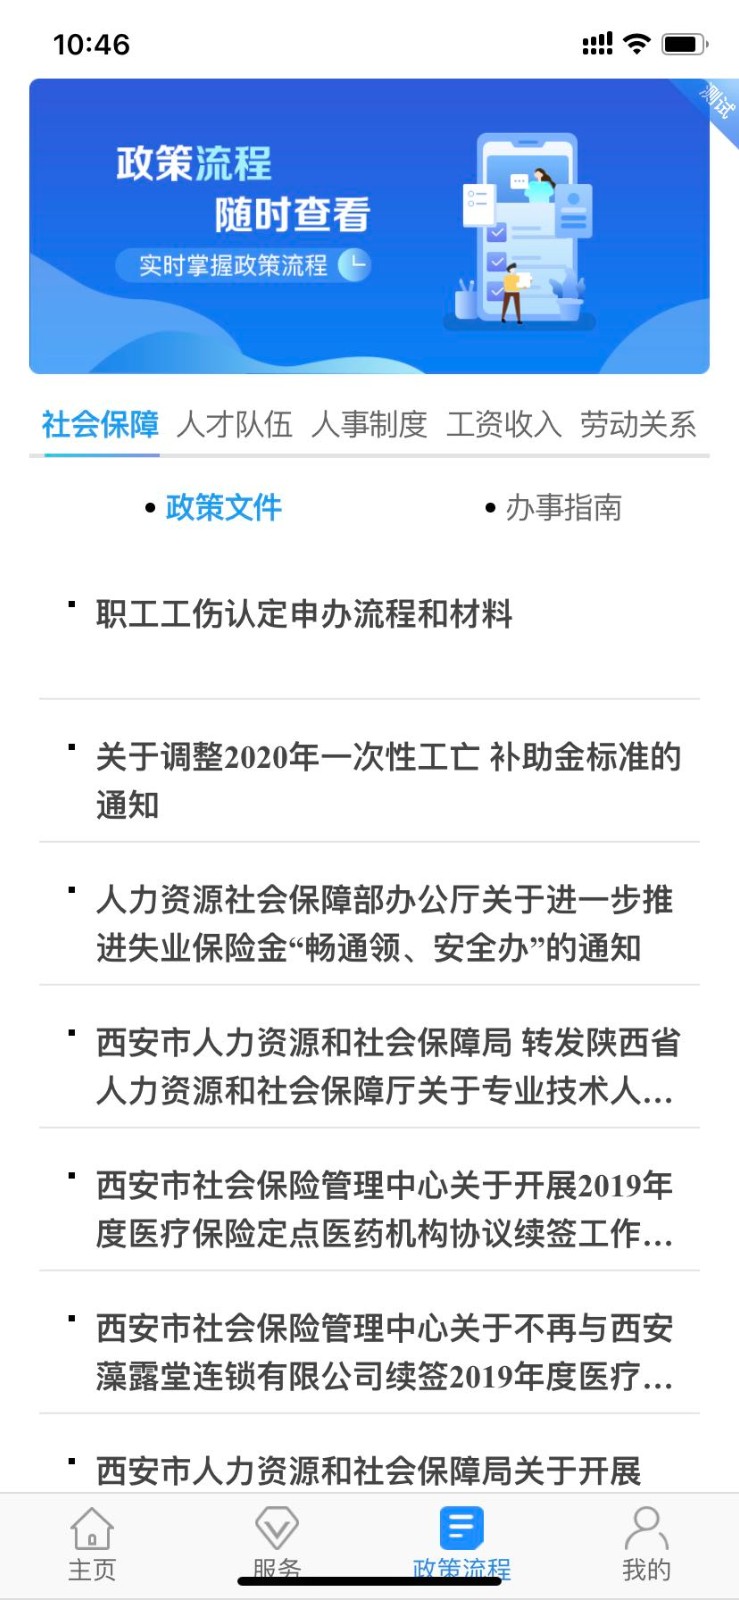 西安人社通苹果版v3.8.4